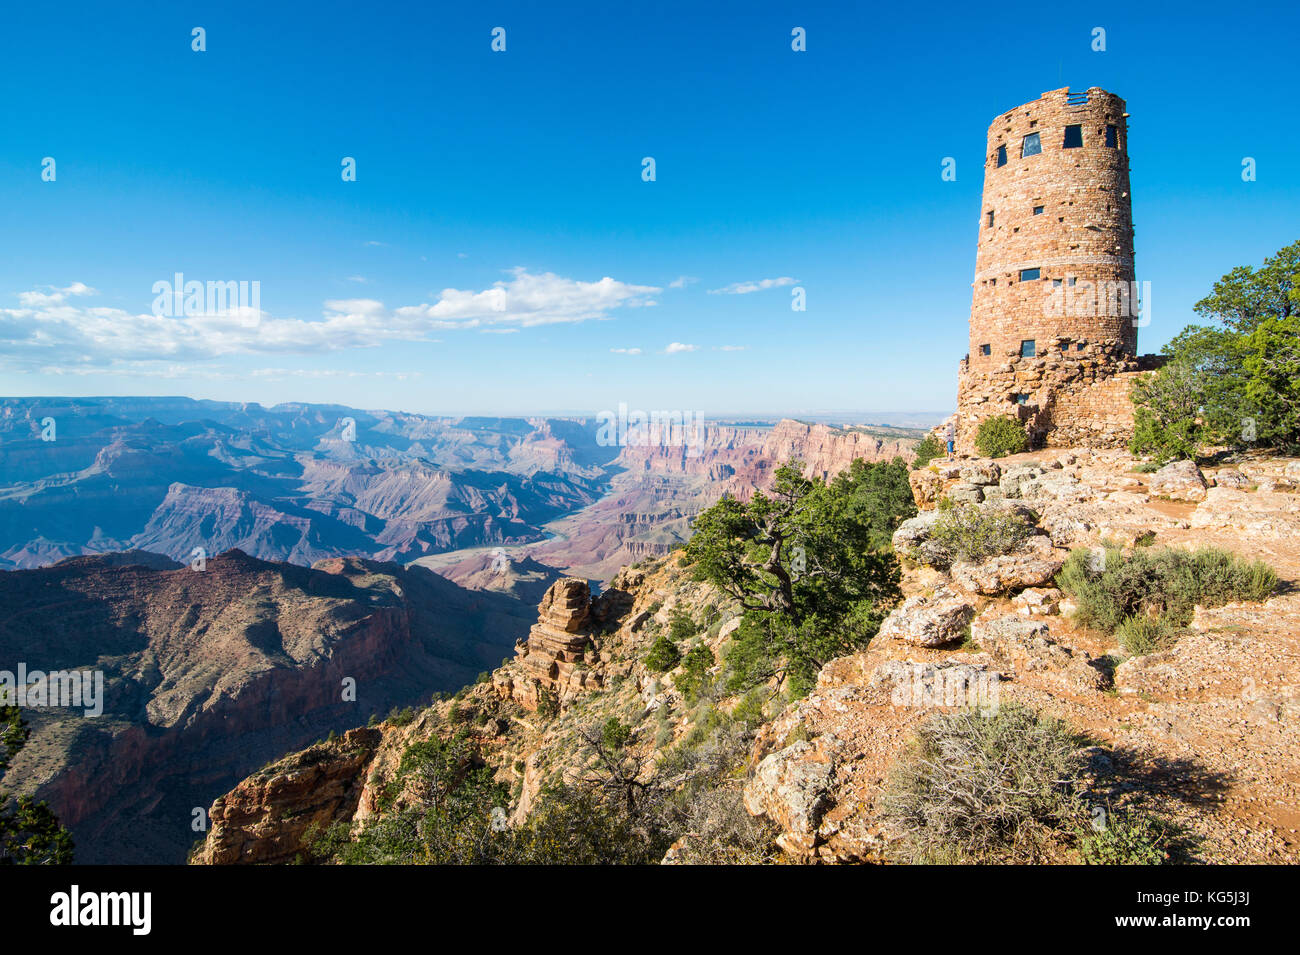 Vista del deserto torre in pietra sulla parte superiore del bordo Sud del Grand Canyon, Arizona, Stati Uniti d'America Foto Stock